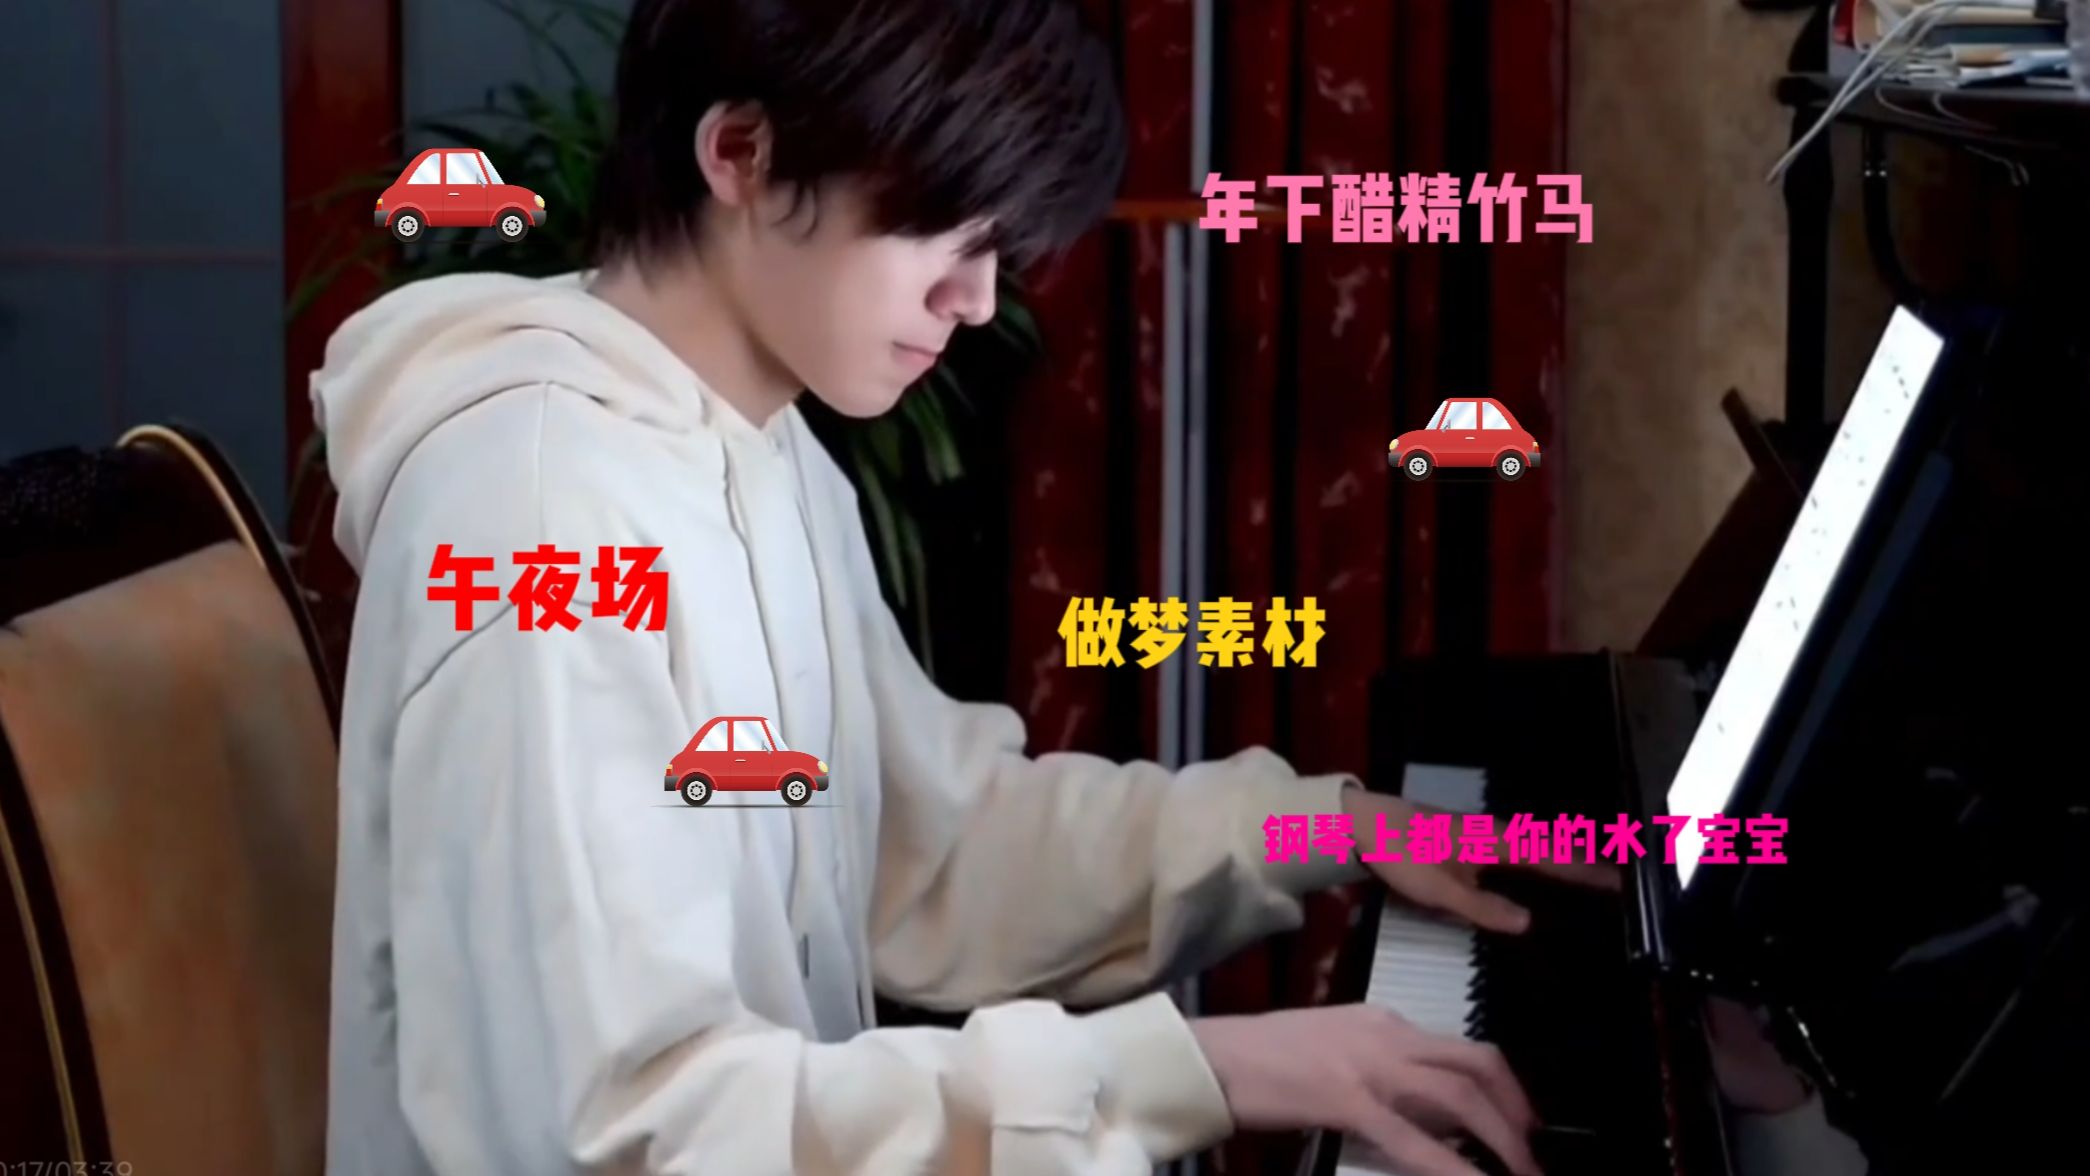 【宋亚轩x你│做梦素材】“钢琴上都是水了宝宝”年下致力于当哥